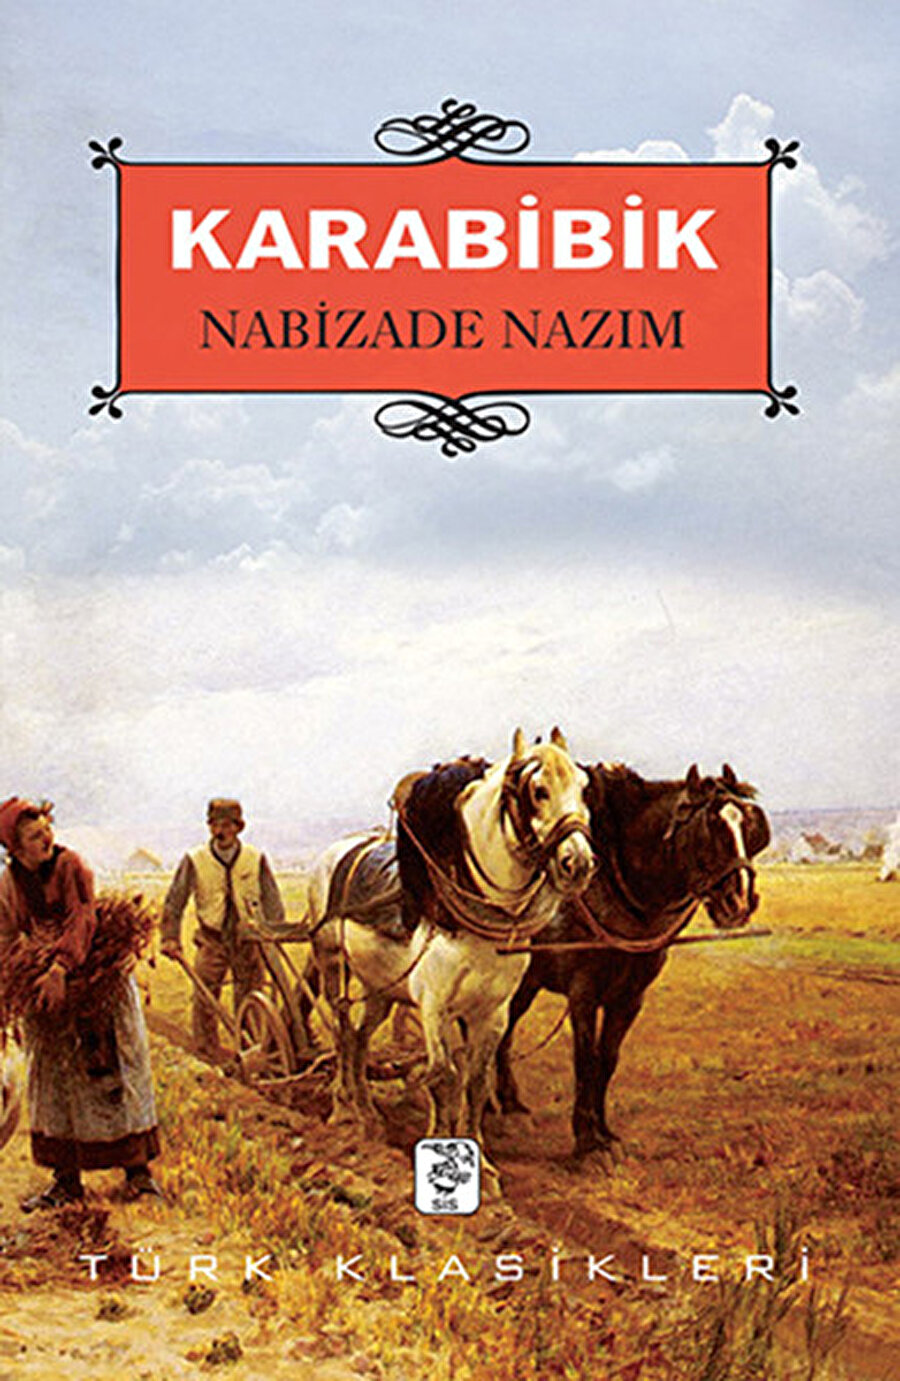 Karabibik

                                    
                                    Bu ismi hatırlayanlarınız olmuştur, Türk edebiyatının ilk köy romanı olarak Nabizade Nazım tarafından 1889 yılında yayımlanmıştır. Aslında bir romandan çok uzun bir öyküyü andıran bu kitap Karabibiğin köydeki geçim sıkıntısı ve kızını evlendirme telaşı üzerine kurulmuş bir eserdir. O dönemin konuşma tarzını ve günlük hayattaki rutinlerini çok iyi anlatan Nazım'ın bu kitabı kısa olması nedeniyle de bir oturuşta okunabilecektir.

                                
                                